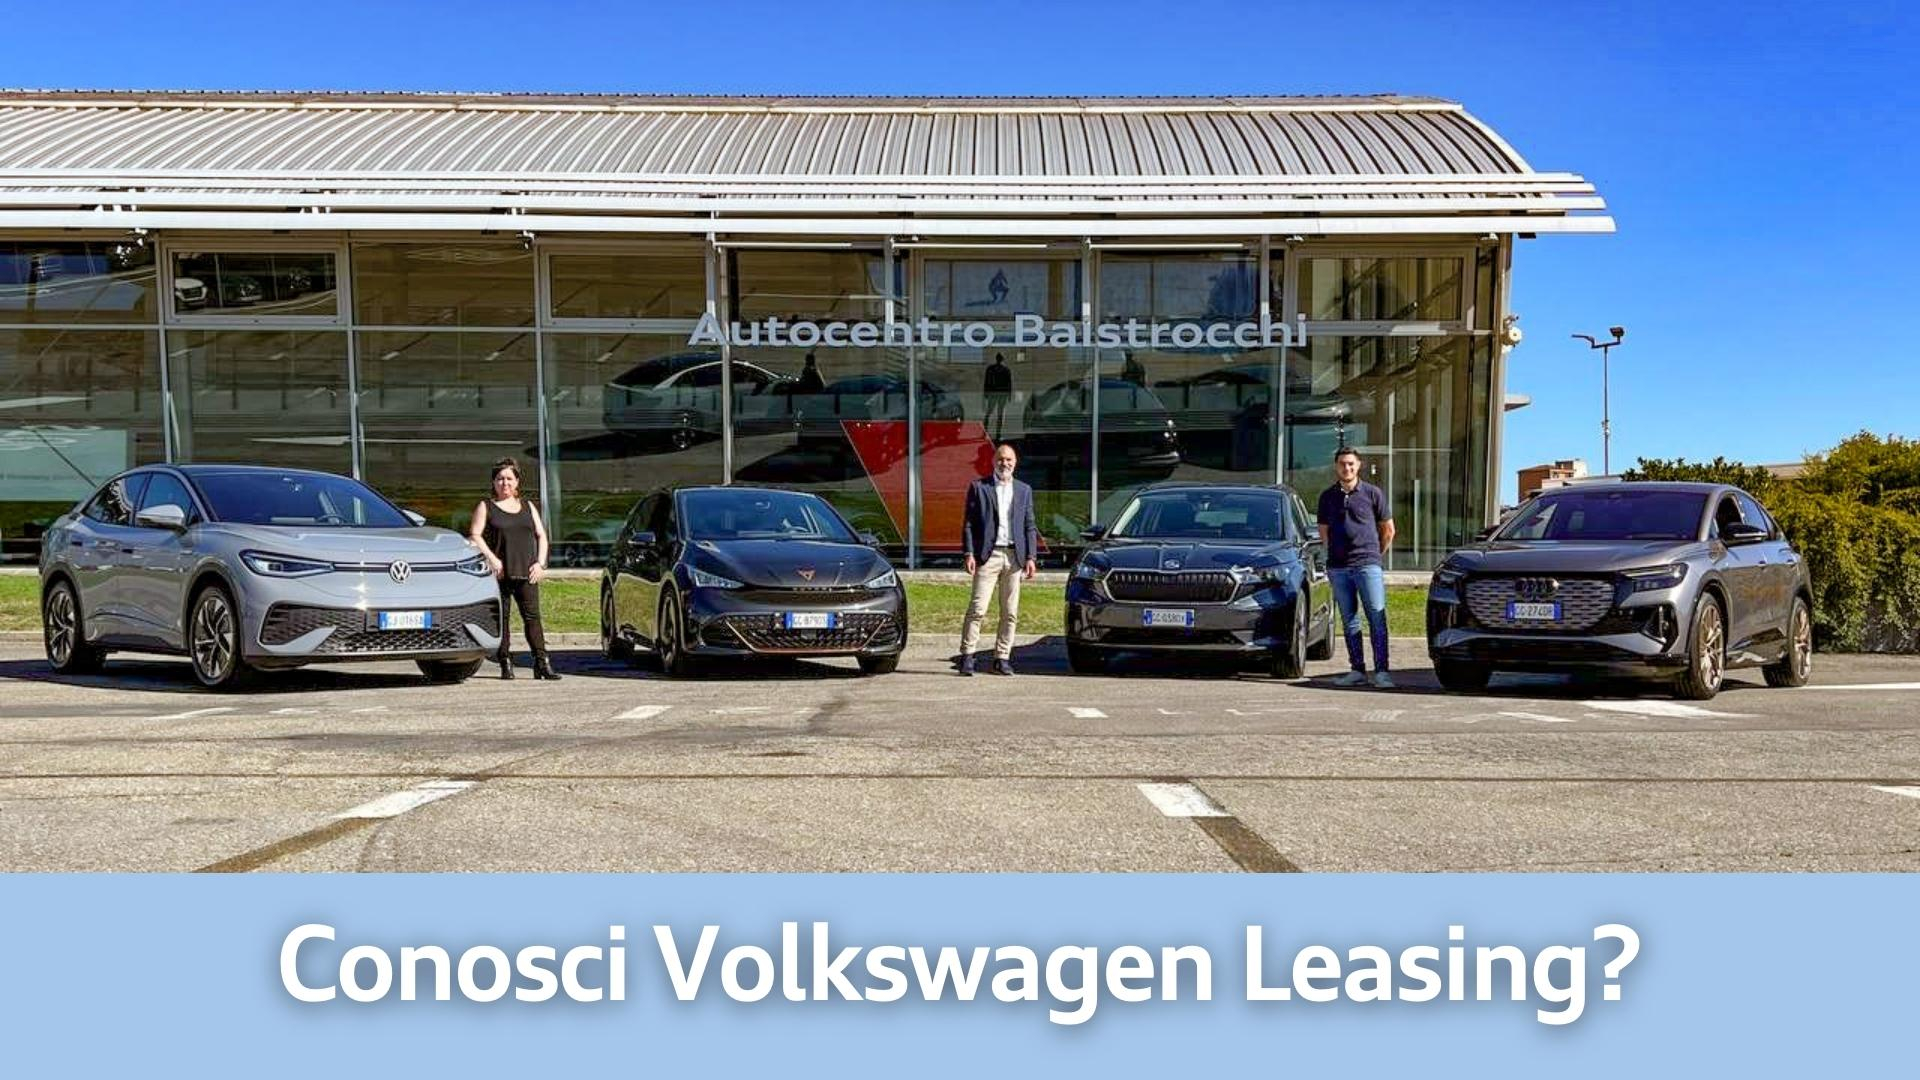 Approfitta ora delle promozioni valide con Volkswagen Leasing